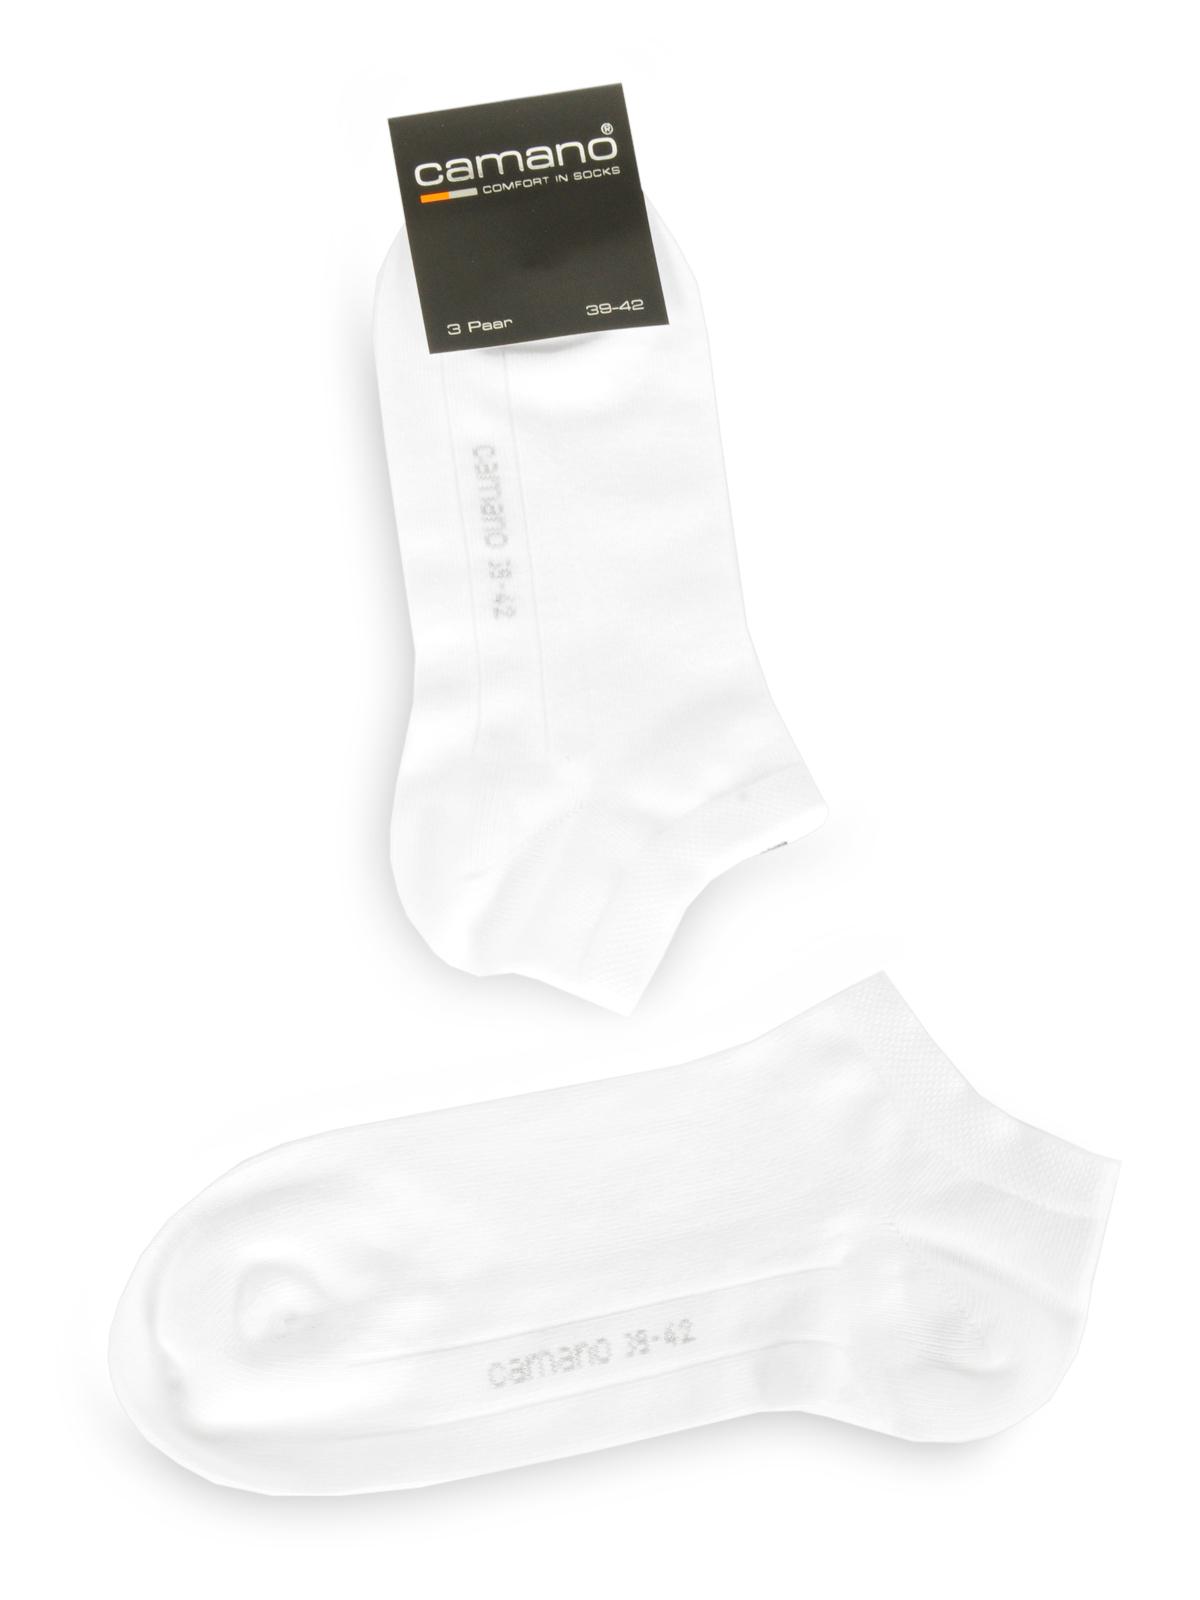 Foto Camano Set de 3 pares de calcetines cortos blanco EU: 39-42